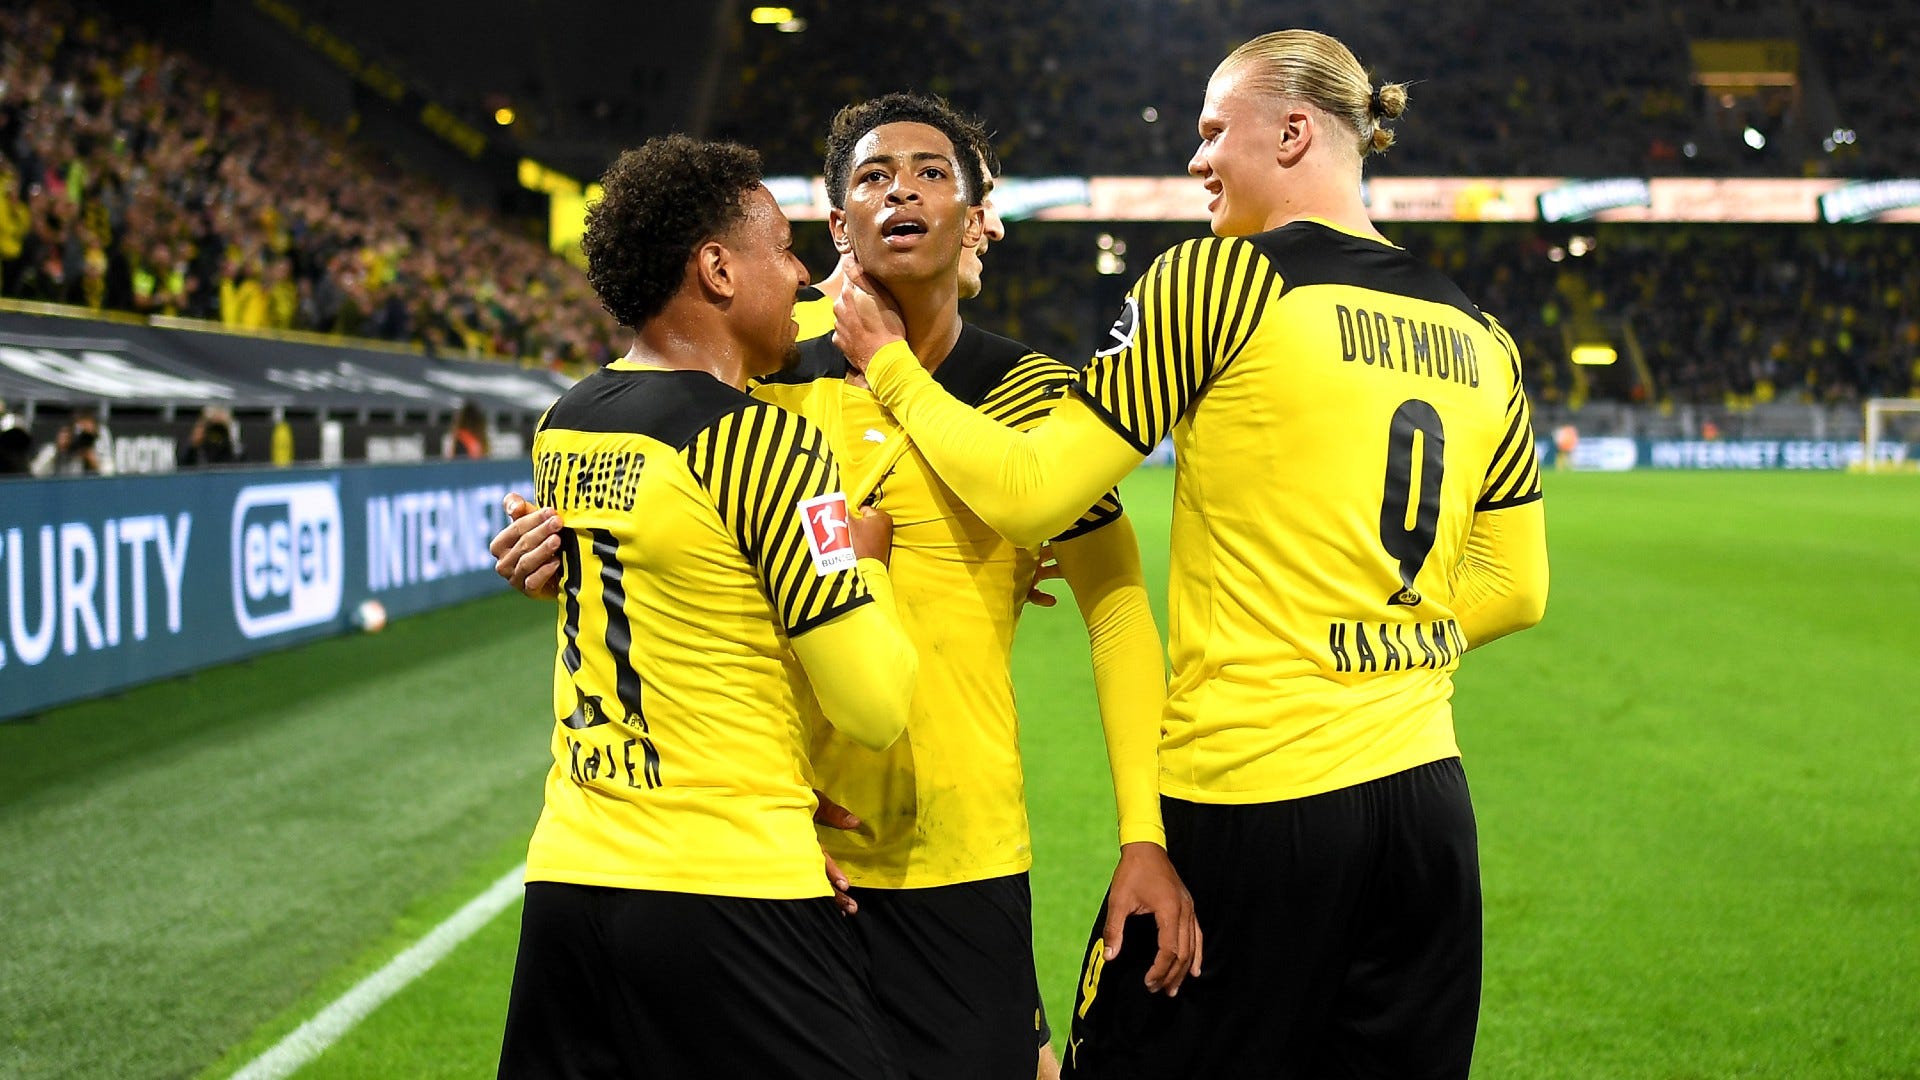 Champions League, Gruppe BVB (Borussia Dortmund) Tabelle, Ergebnisse, Spielplan Goal Deutschland